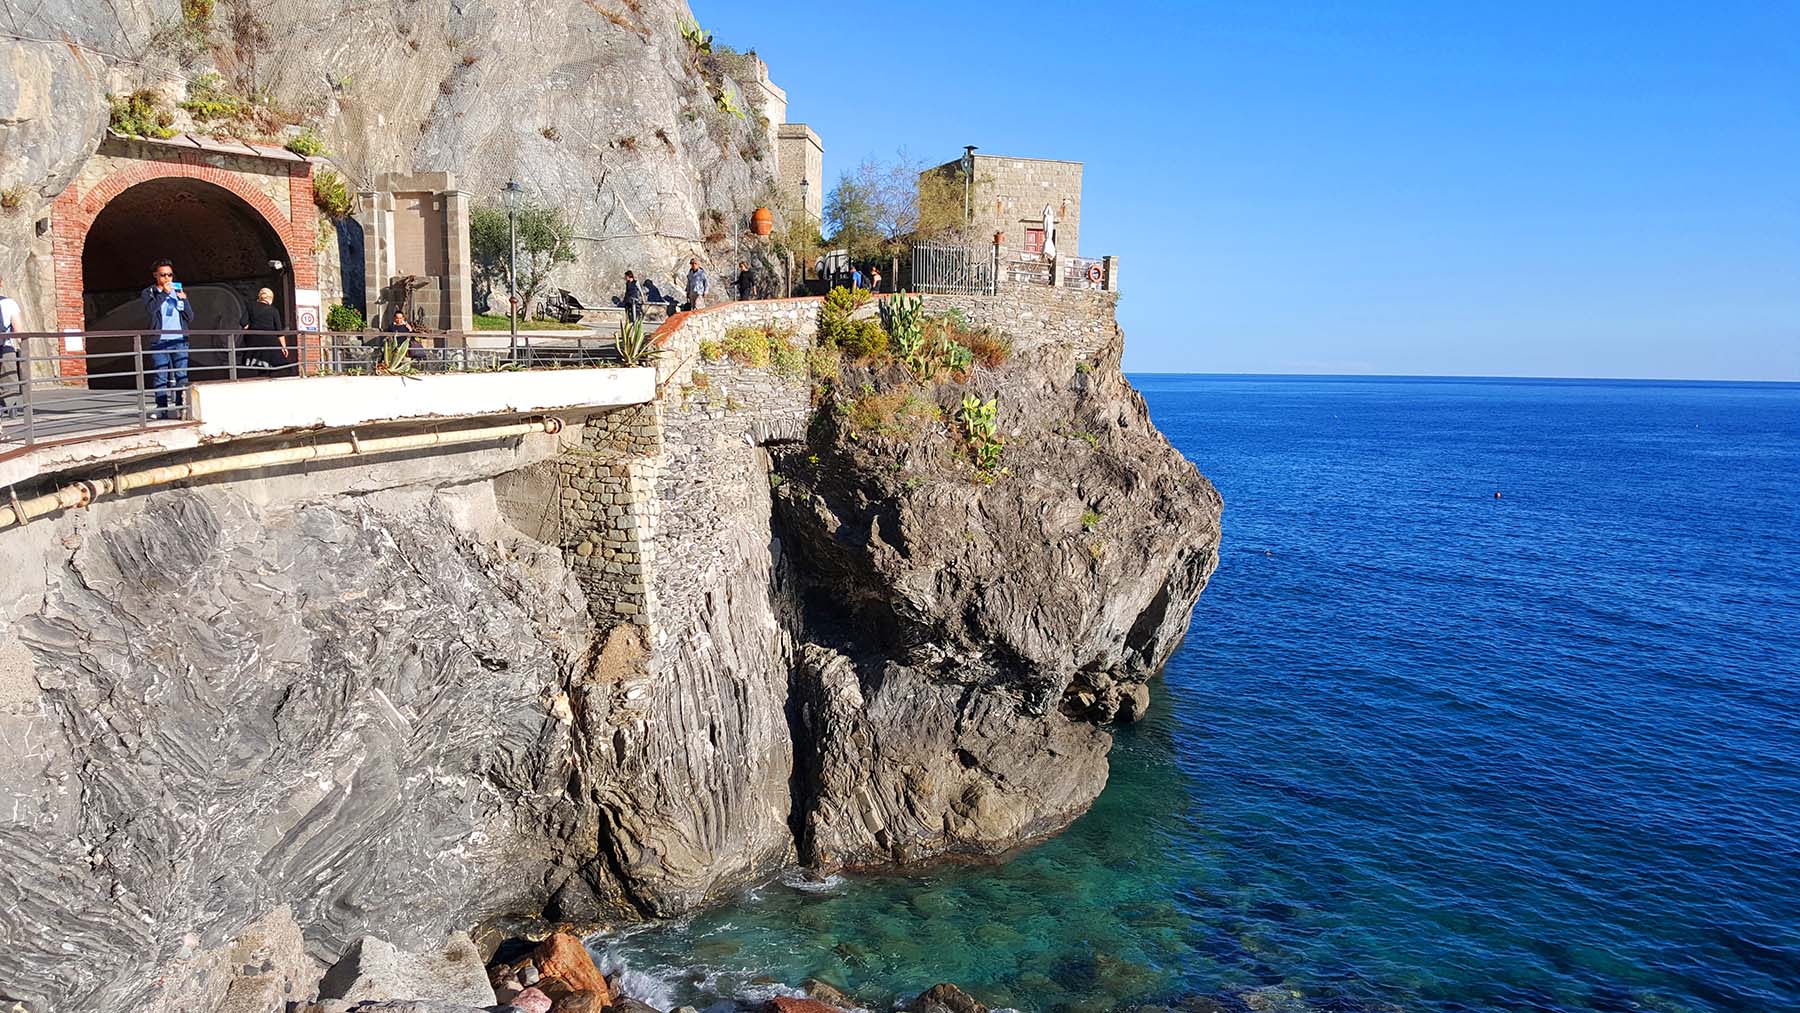 O que fazer em 1 dia em Cinque Terre na Itália